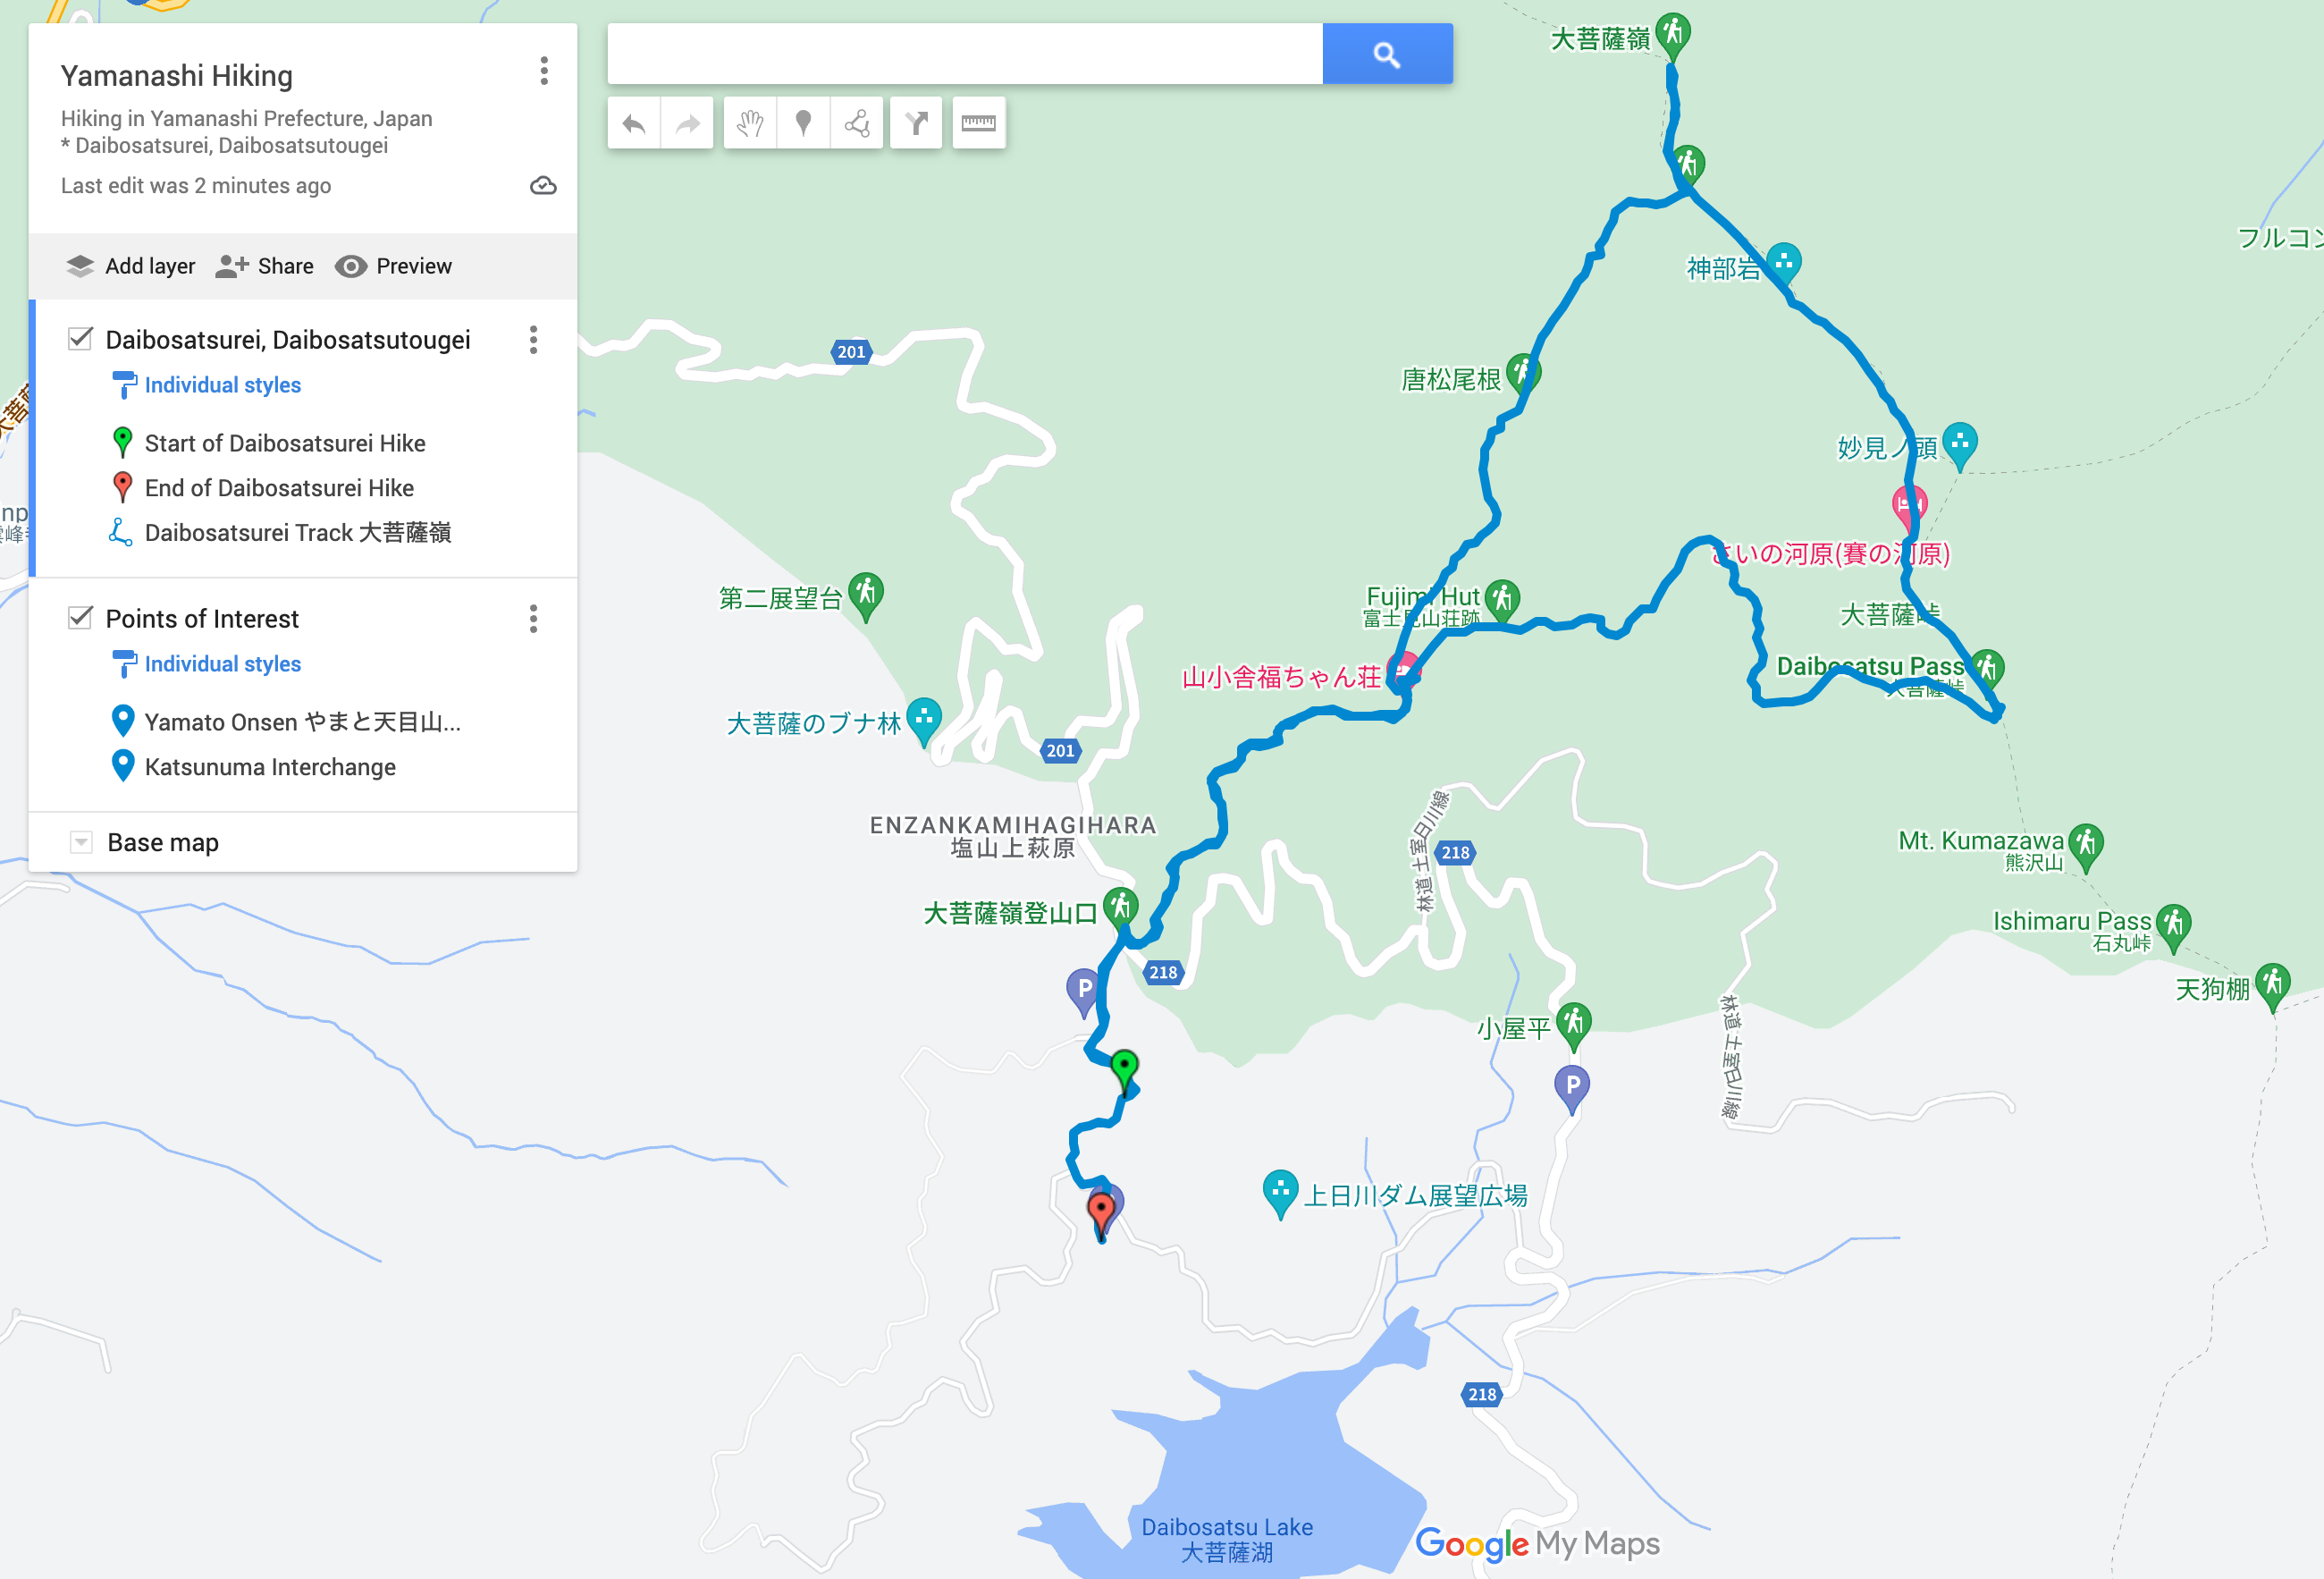 Screenshot of hiking route up Daibosatsurei, down via Daibosatsu Pass.